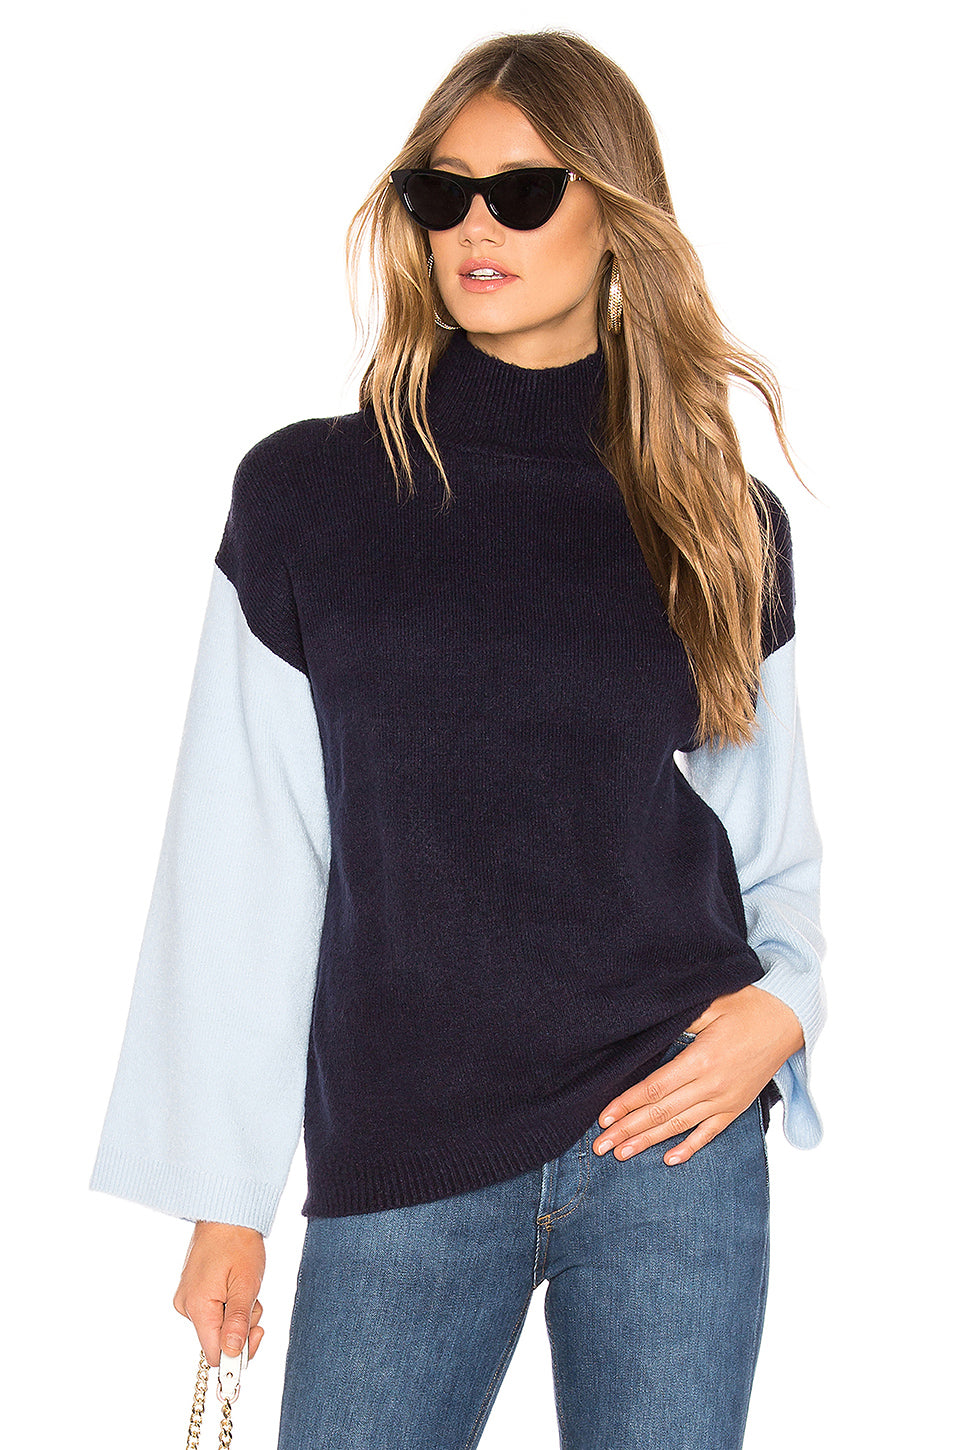 Hepburn Sweater in NAVY & POWDER BLUE